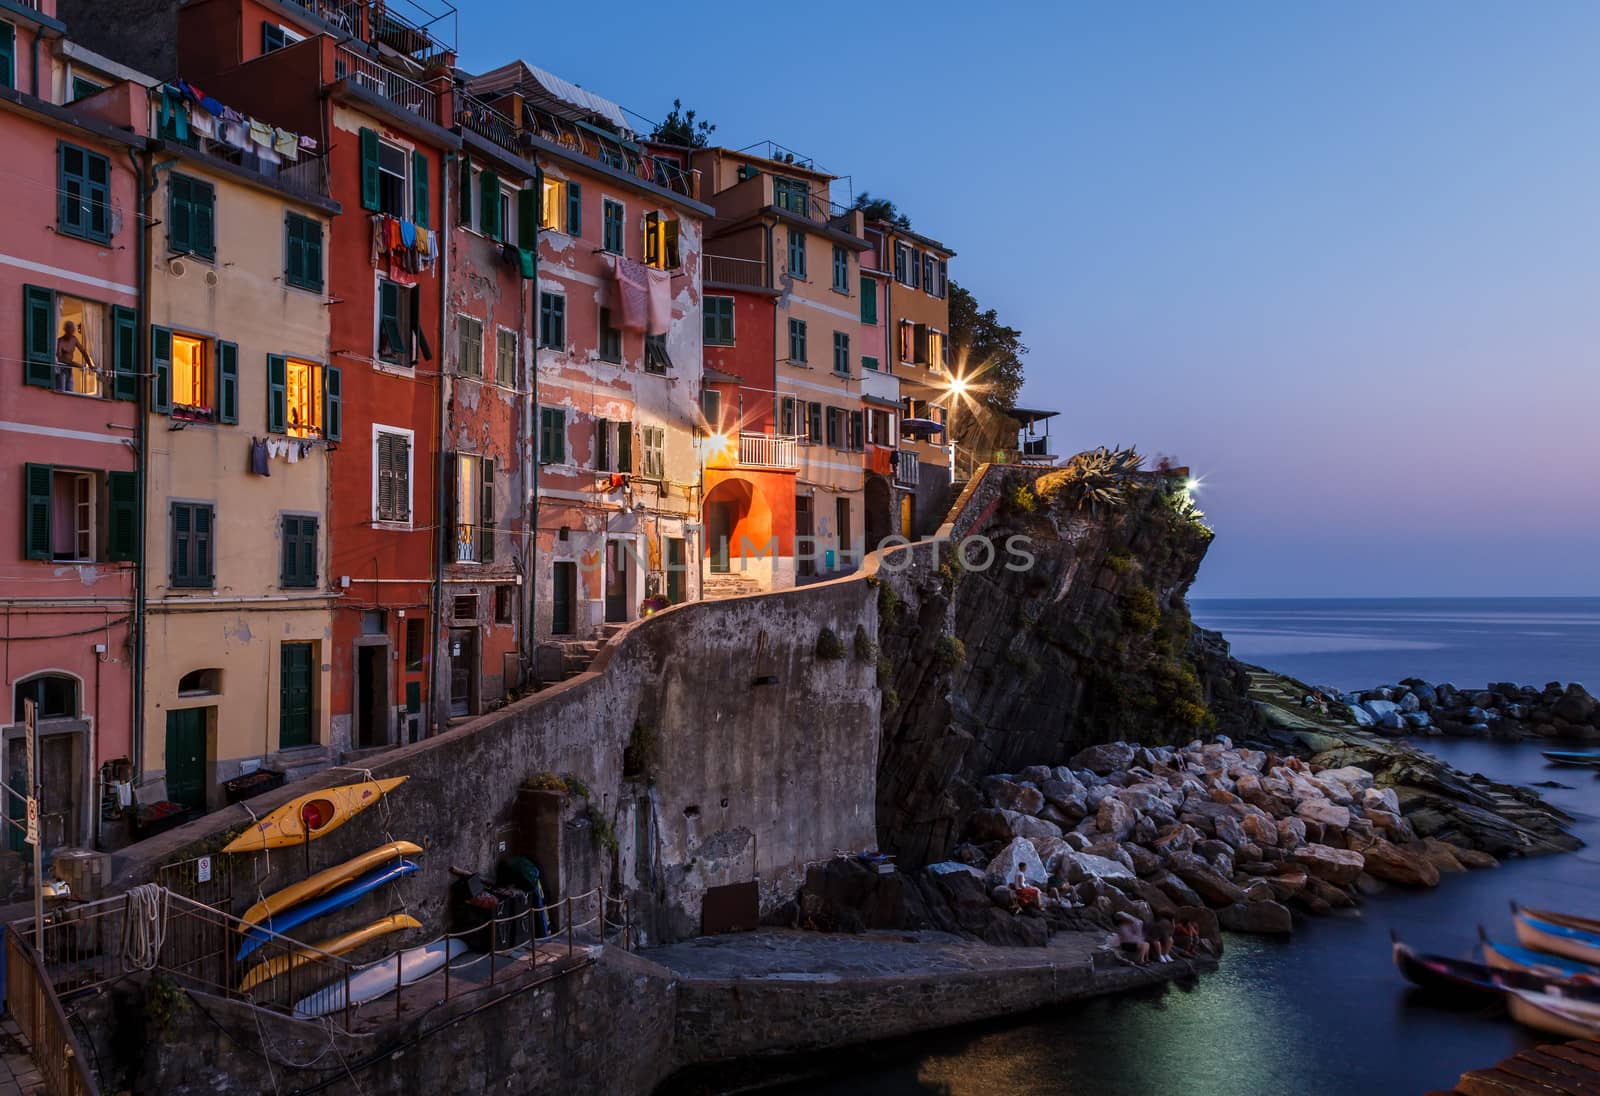 Village of Riomaggiore in Cinque Terre Illuminated at Night, Ita by anshar